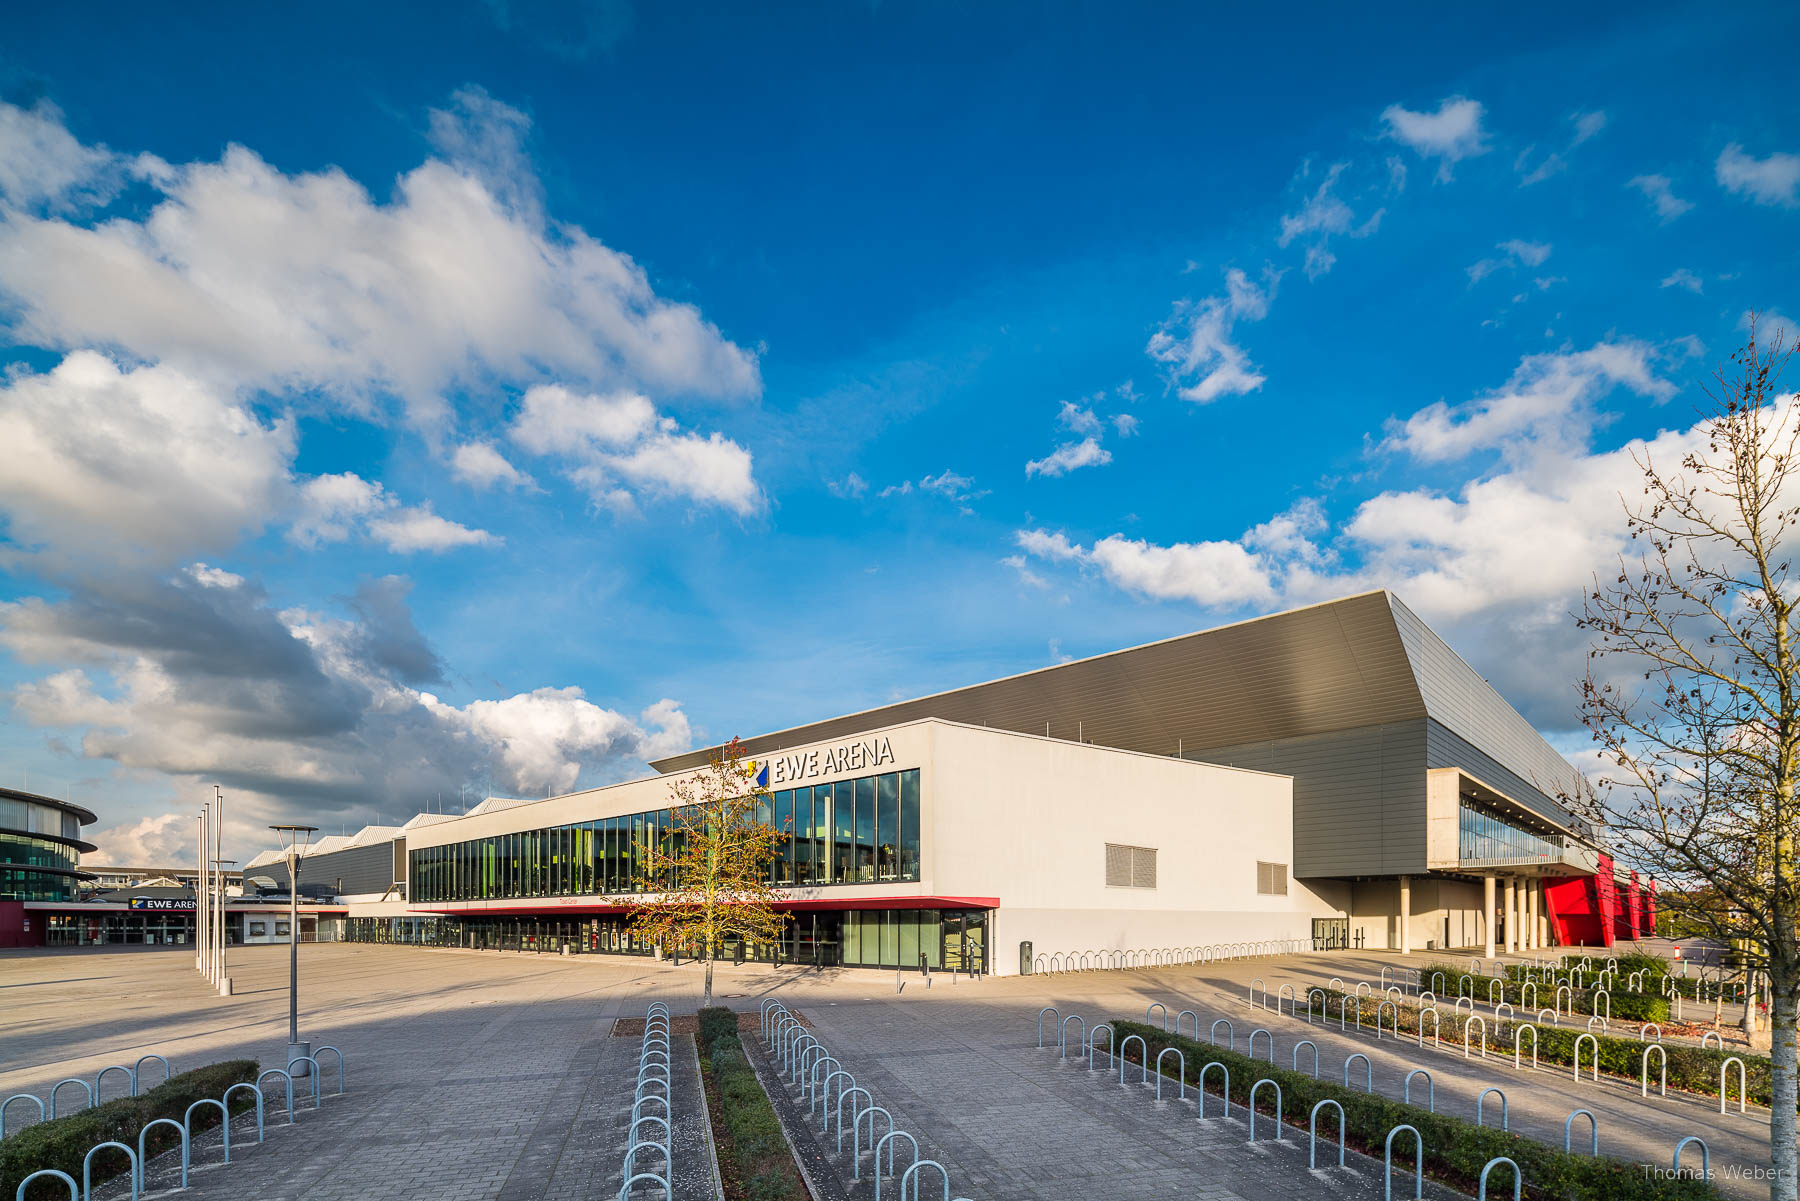 Außenfotos der EWE-Arena in Oldenburg, Thomas Weber, Fotograf Oldenburg